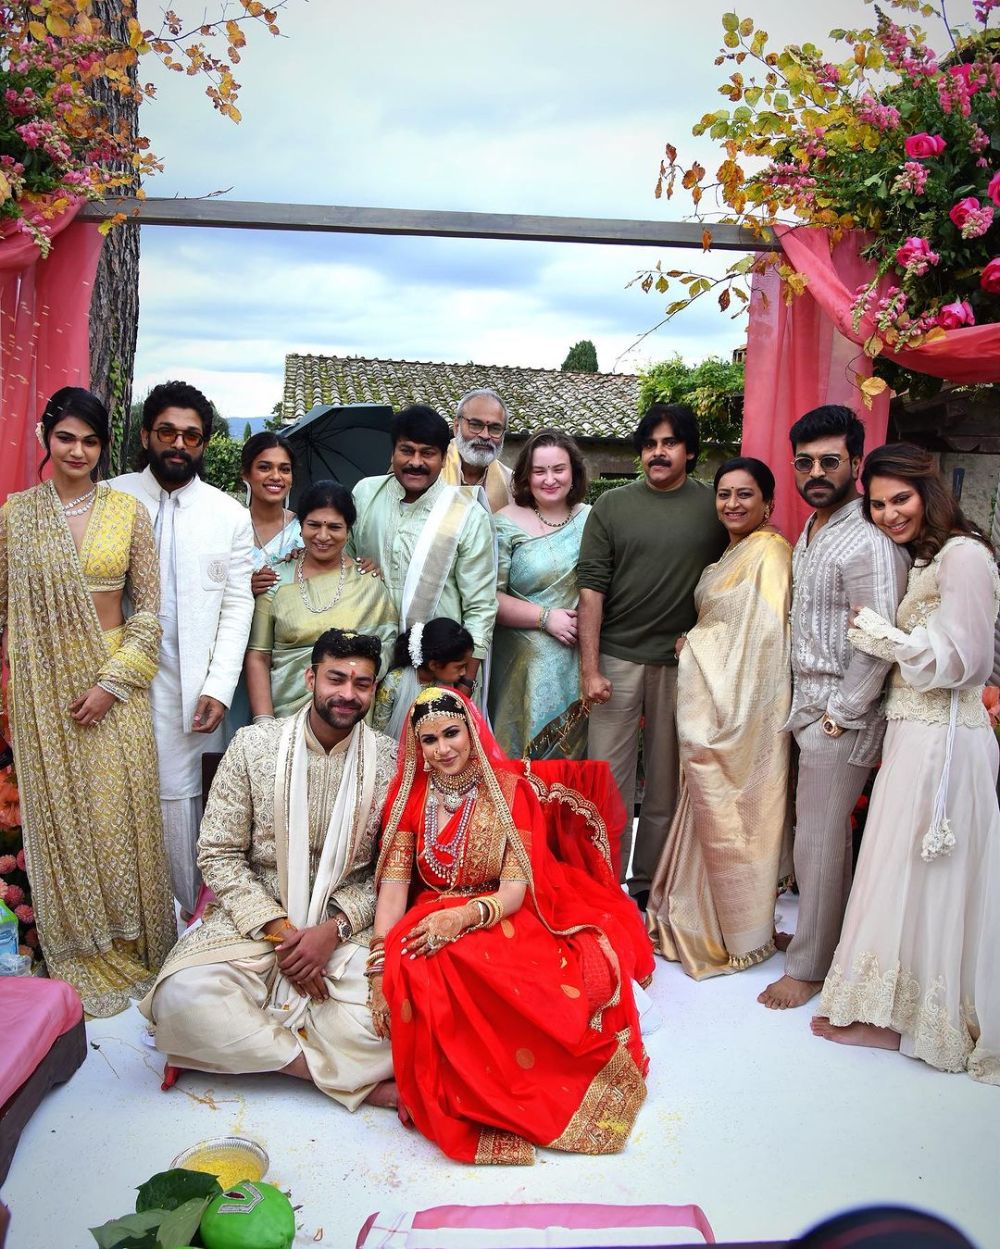 7 Fakta Aktor India Varun Tej, Sepupu Ram Charan Ini Baru Saja Menikah